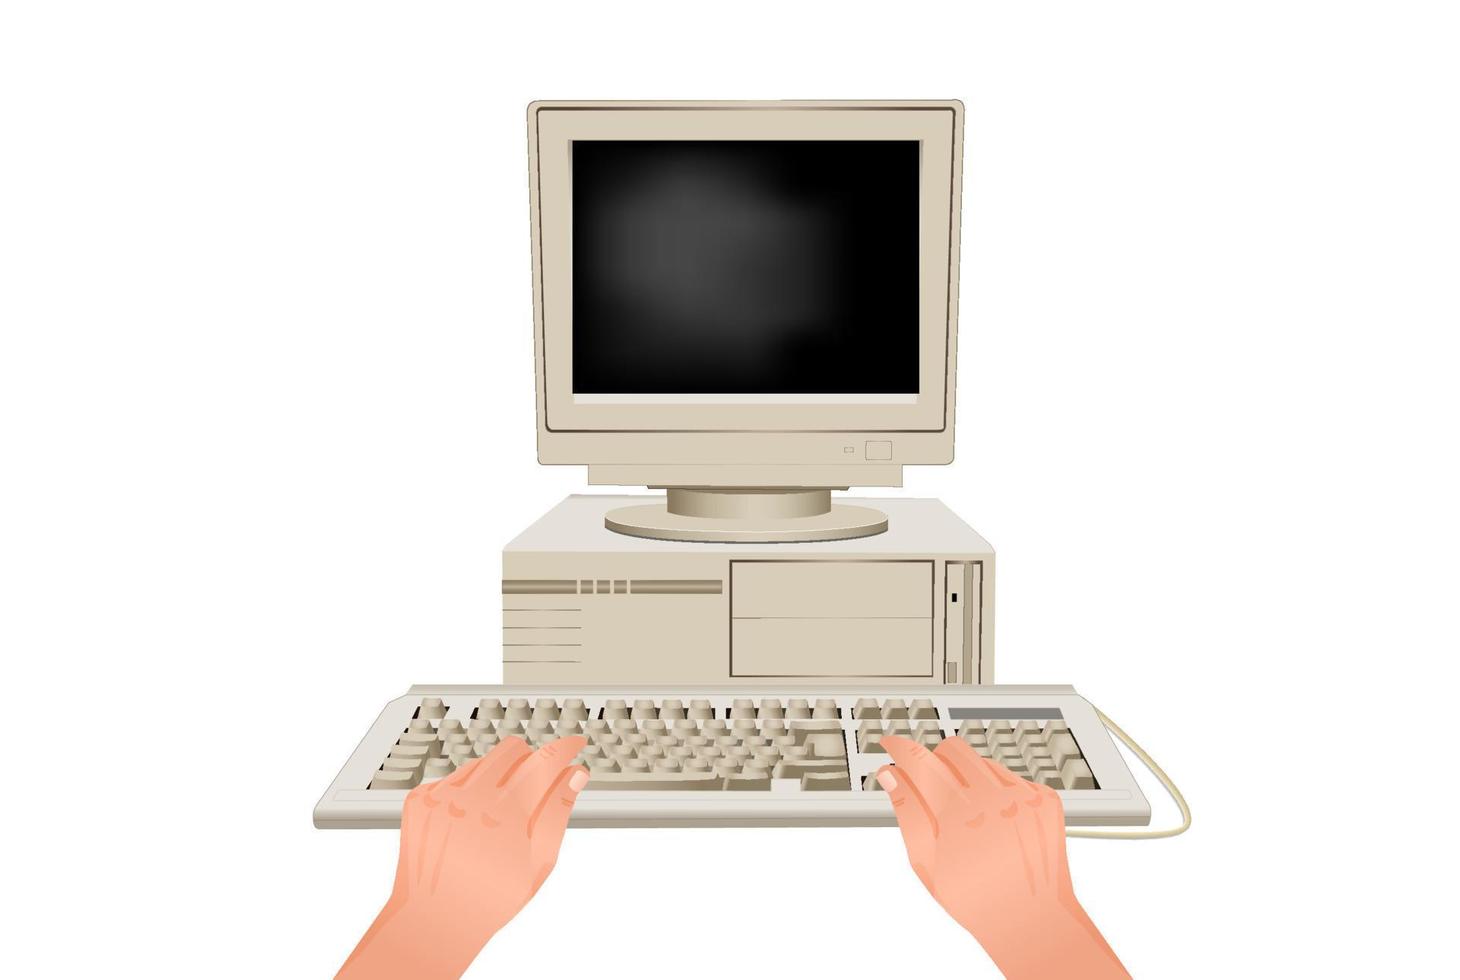 las manos están escribiendo en el teclado de la computadora. lugar de trabajo en línea detrás de equipos con estilo de pc retro para el uso moderno de marketing de vectores de negocios de comunicación de trabajo web.